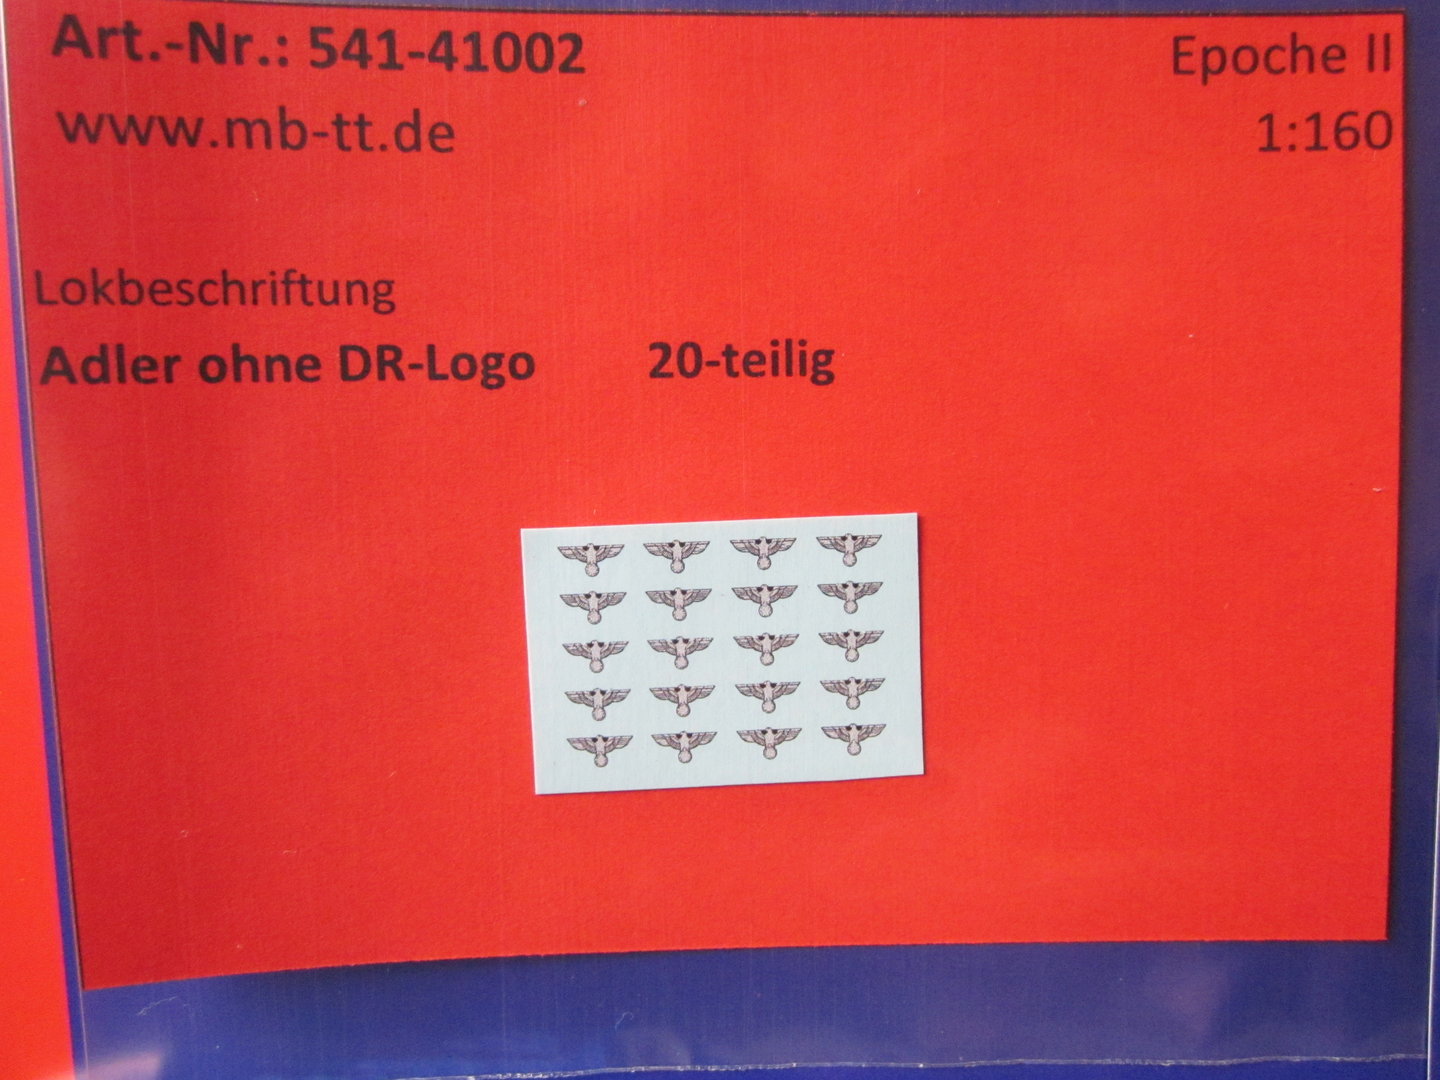 Nassschiebebilder 20 tlg „DRB-Adler ohne DR-Logo“ Ep IIc TT